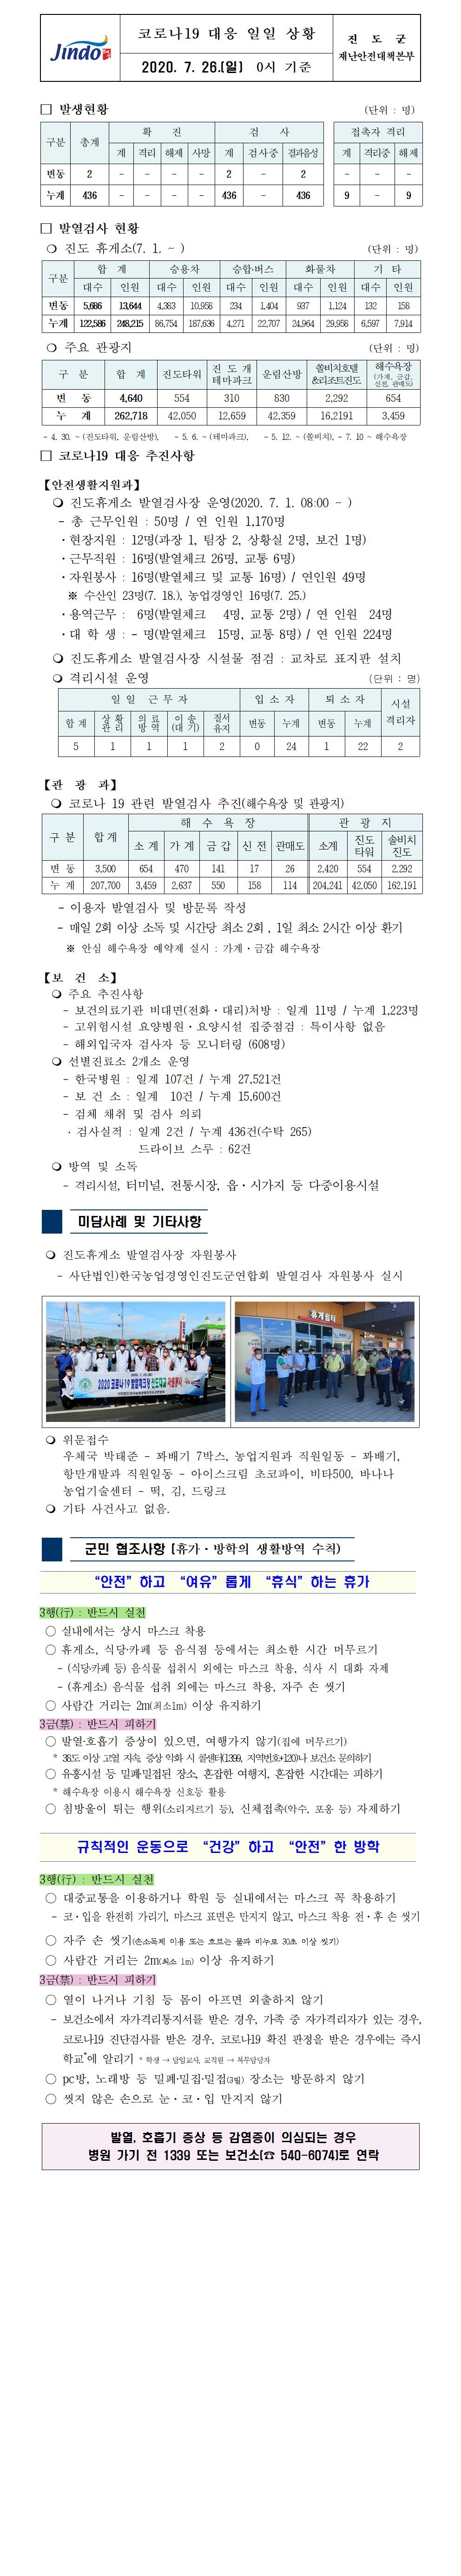 코로나19대응 일일 상황 보고(7월 26일 0시 기준) 첨부#1